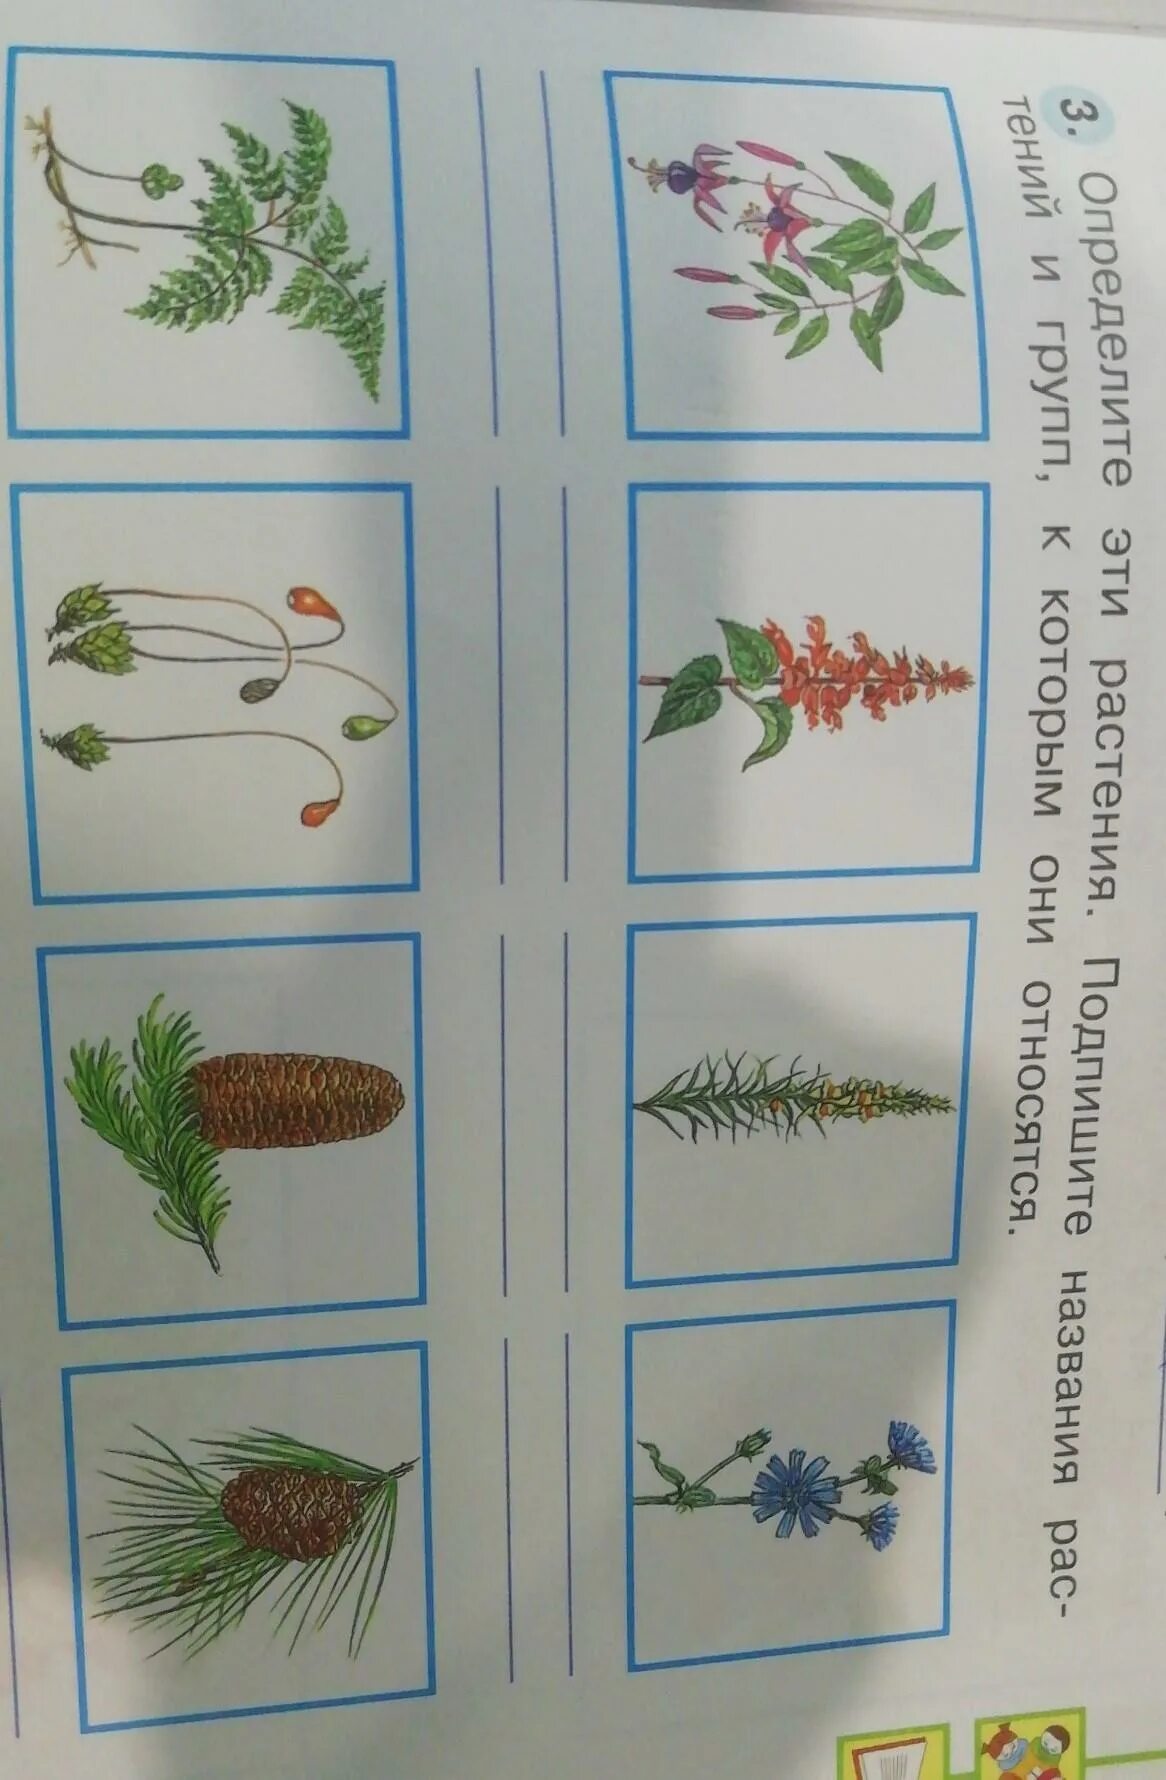 Как отличить растения. Определить растение. Определить растения по фотогалереи. Определить растение по картинке. Распознаватель растений.